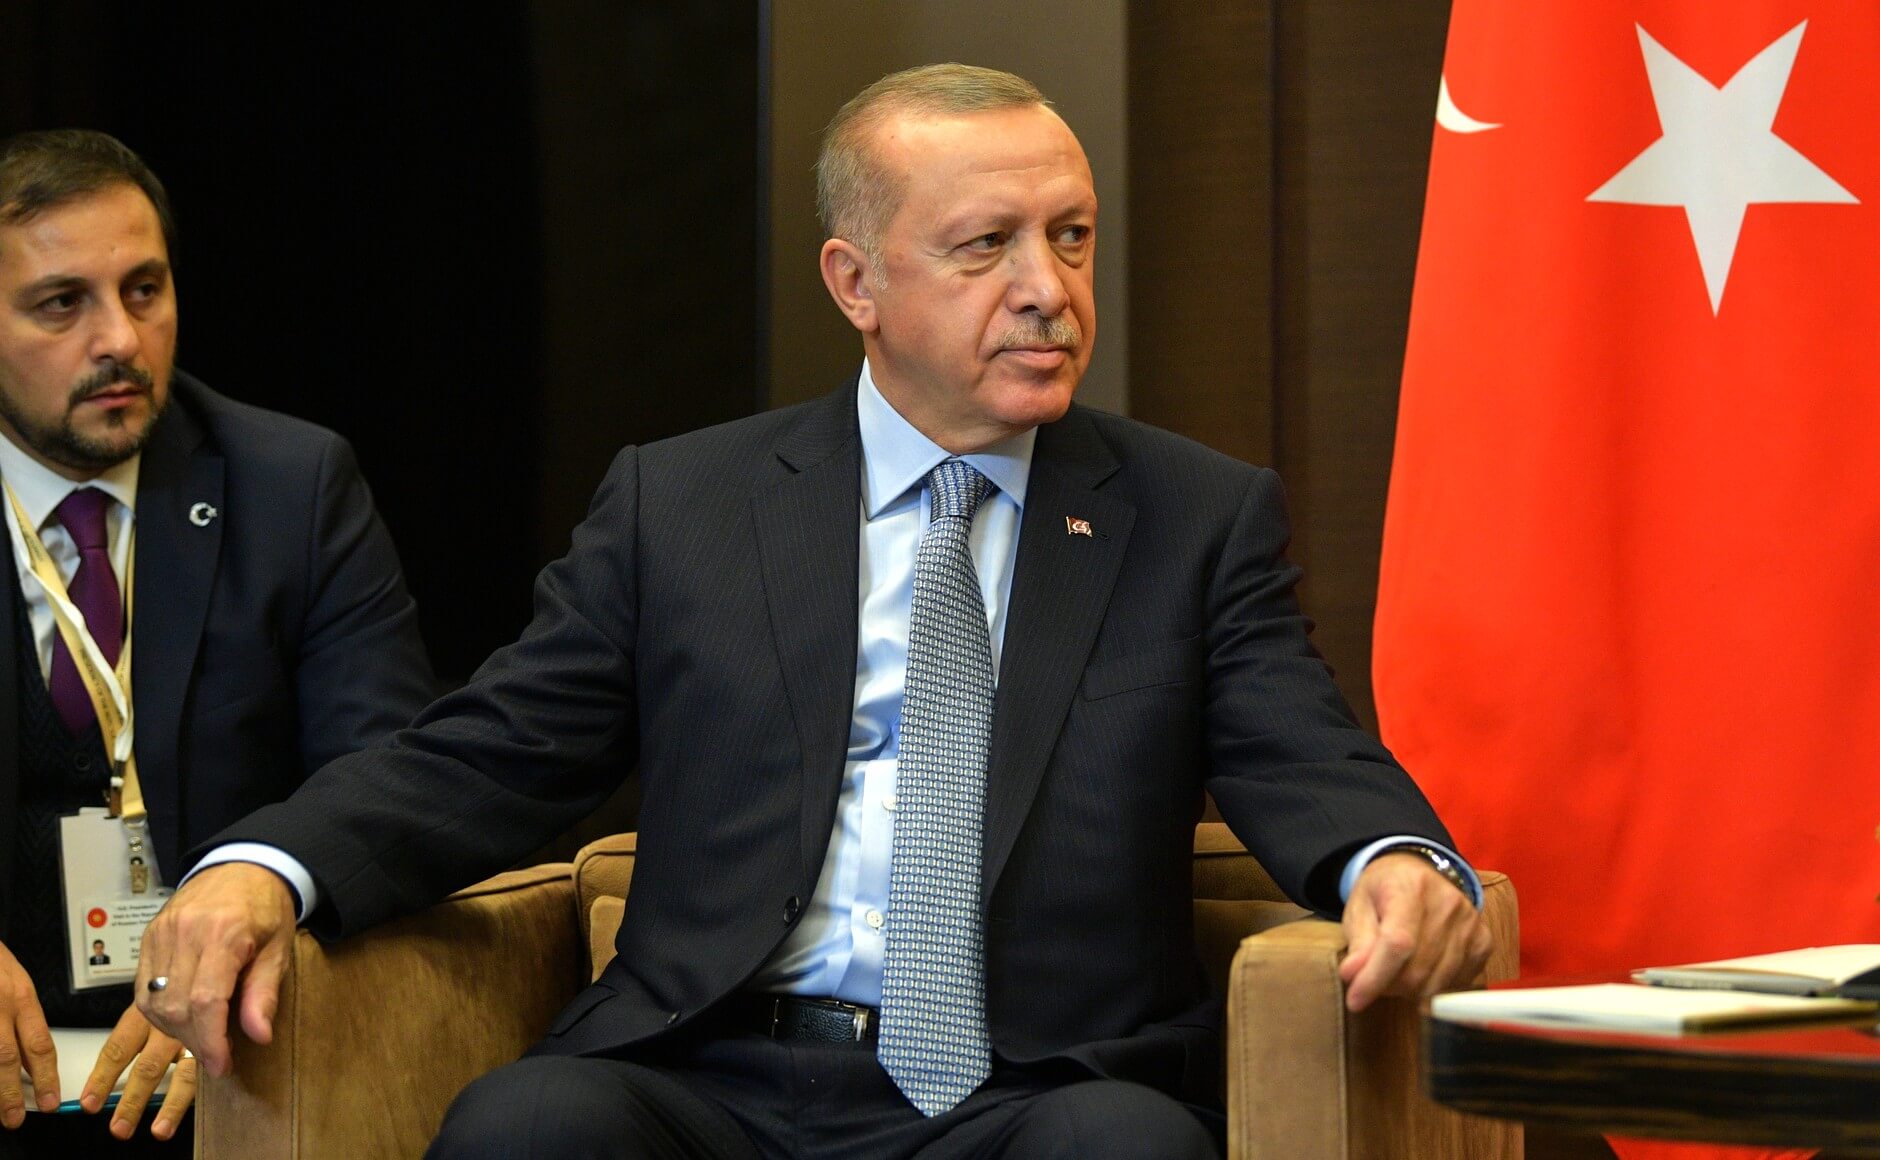 Турецкий лидер также рассказал о планах обсудить 21 февраля с президентом РФ обострение конфликта в Сирии Фото: © Global Look Press / Kremlin Pool